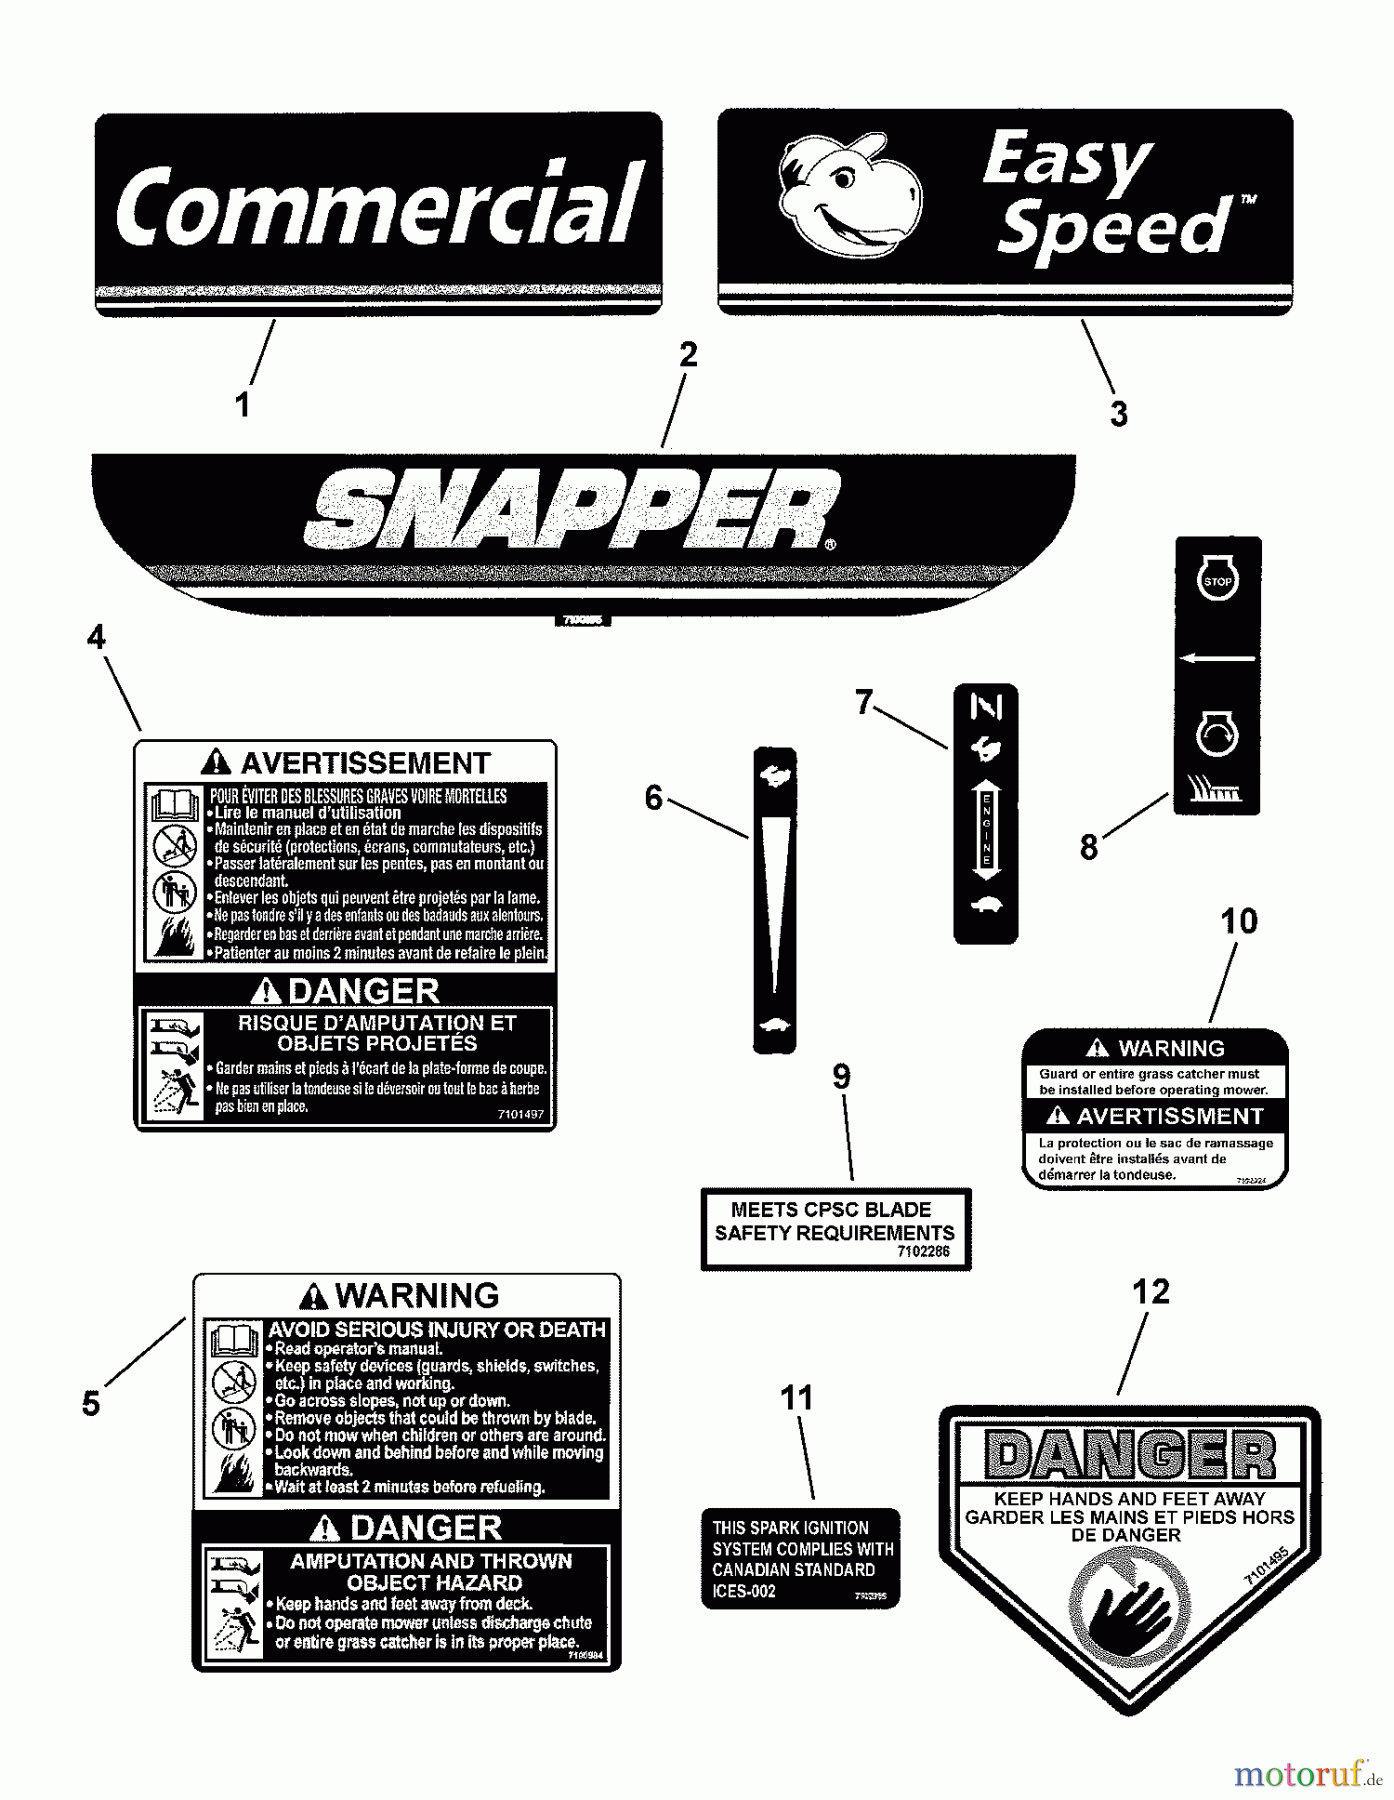  Snapper Rasenmäher CP216019KWVFC (7800288) - Snapper 21